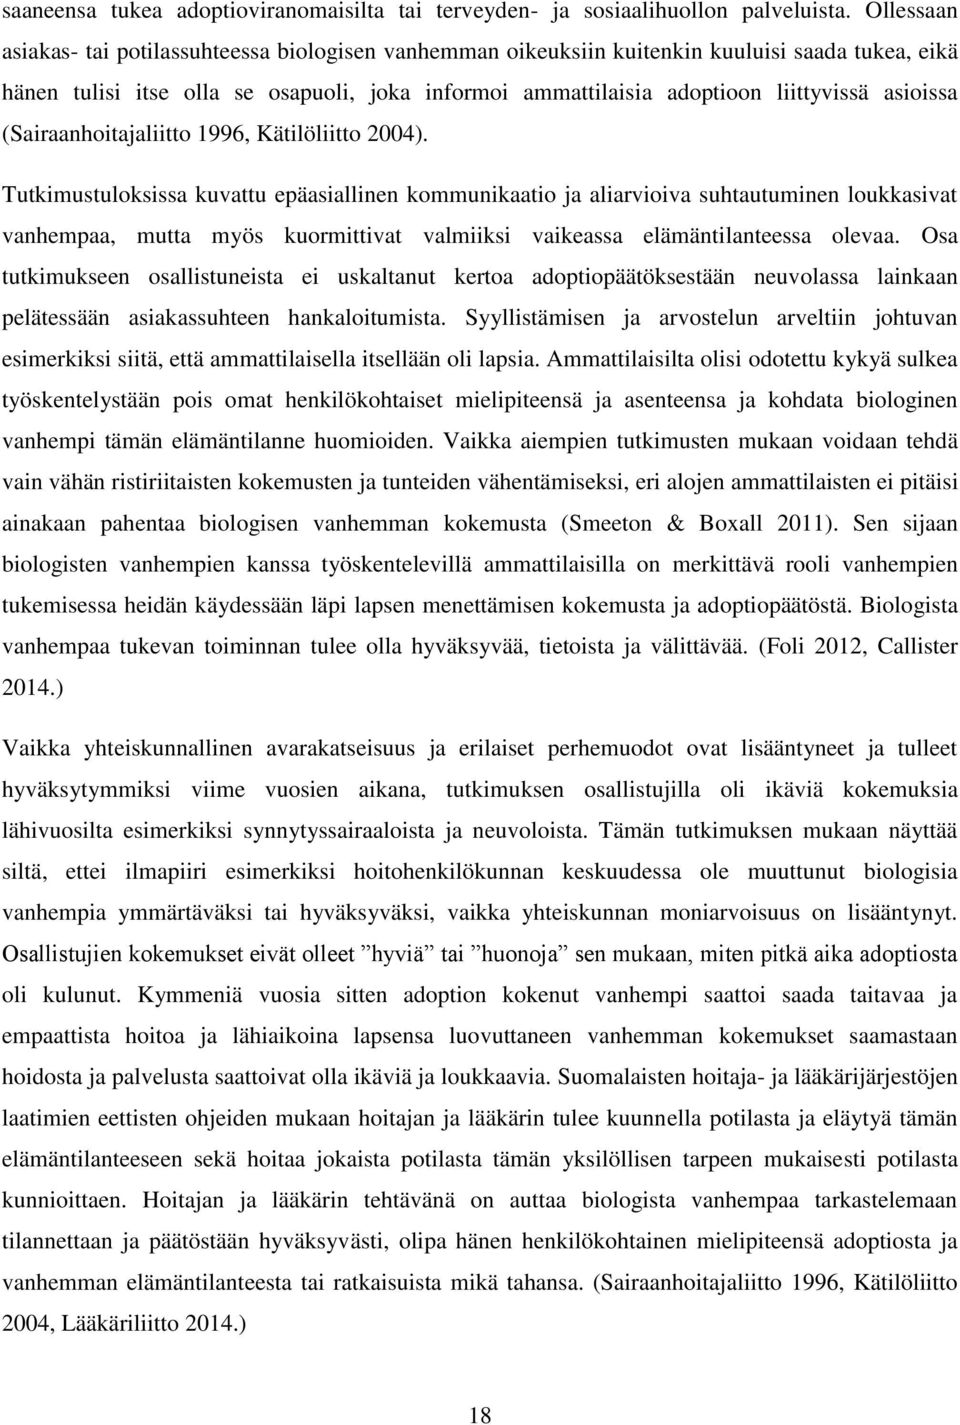 asioissa (Sairaanhoitajaliitto 1996, Kätilöliitto 2004).